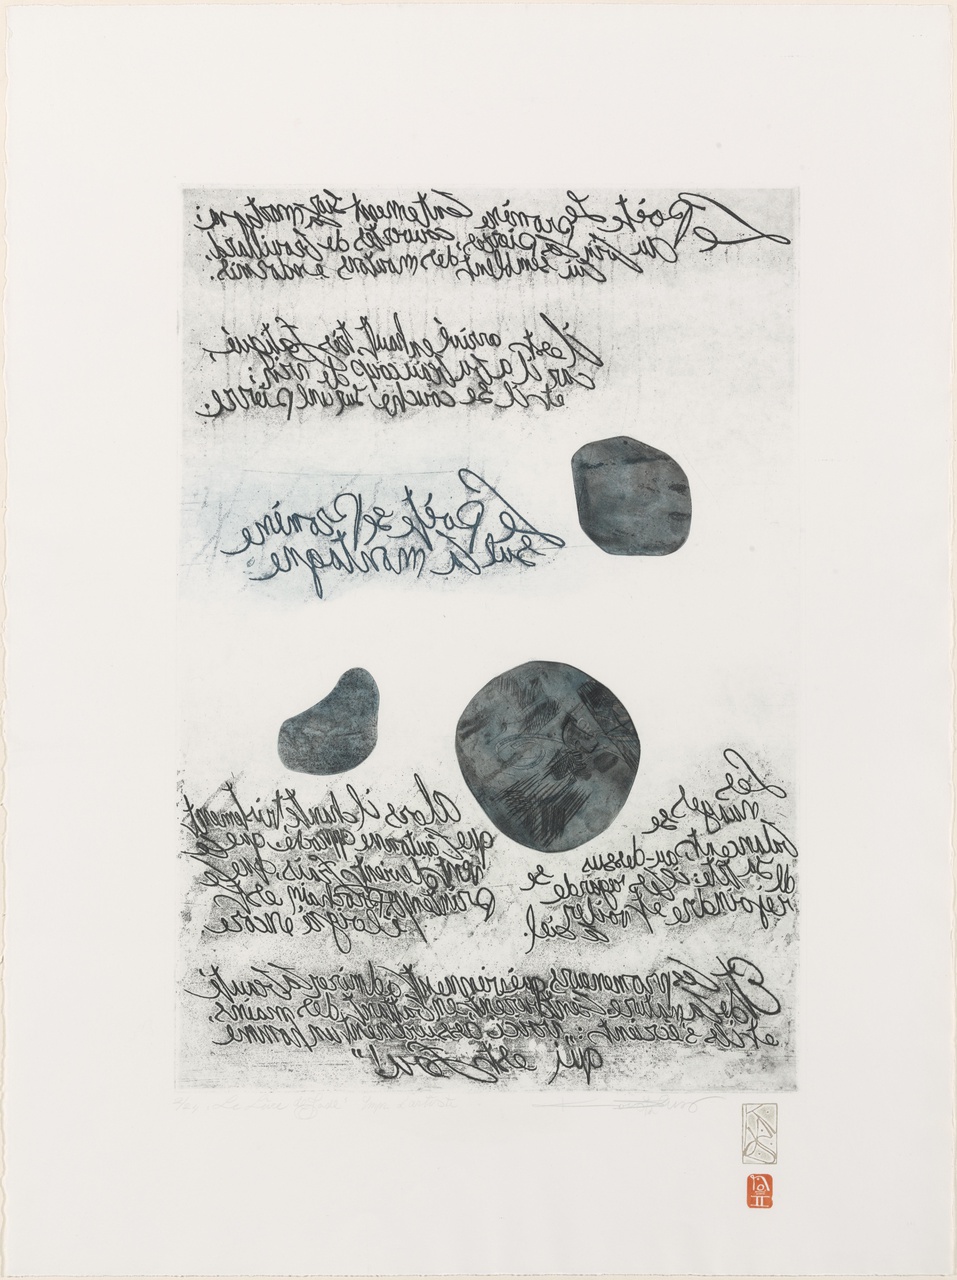 Spiegelschriftdruk: tekst van Chinees gedicht in le livre de Jade: Li-Tong-Po: Le poète se promène sur la montagne enveloppée de brouillard